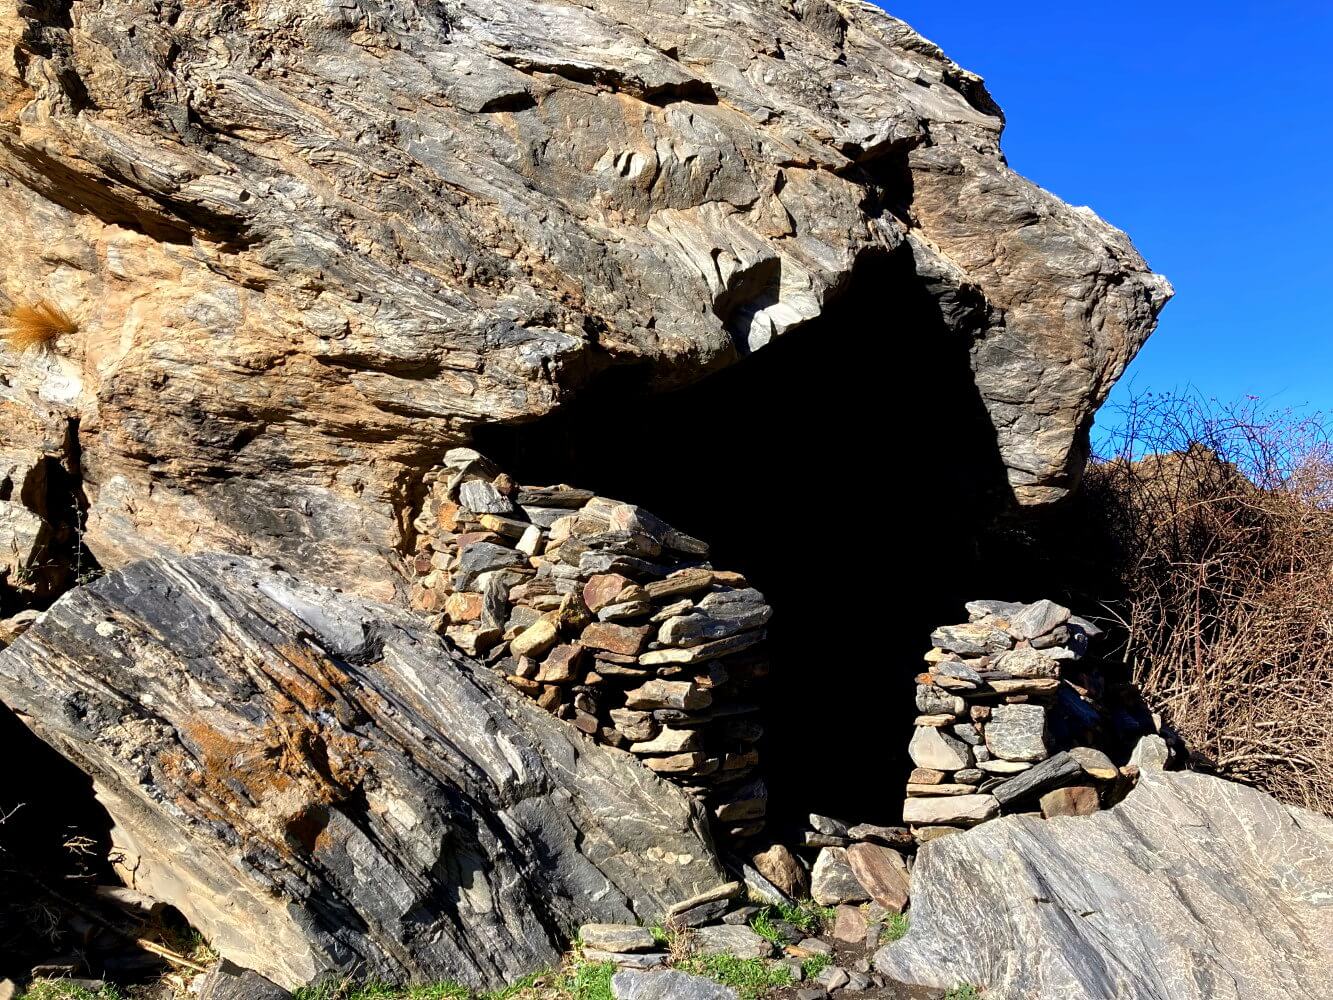 Cueva Secreta Höhle am Ende der Vereda de la Estrella.